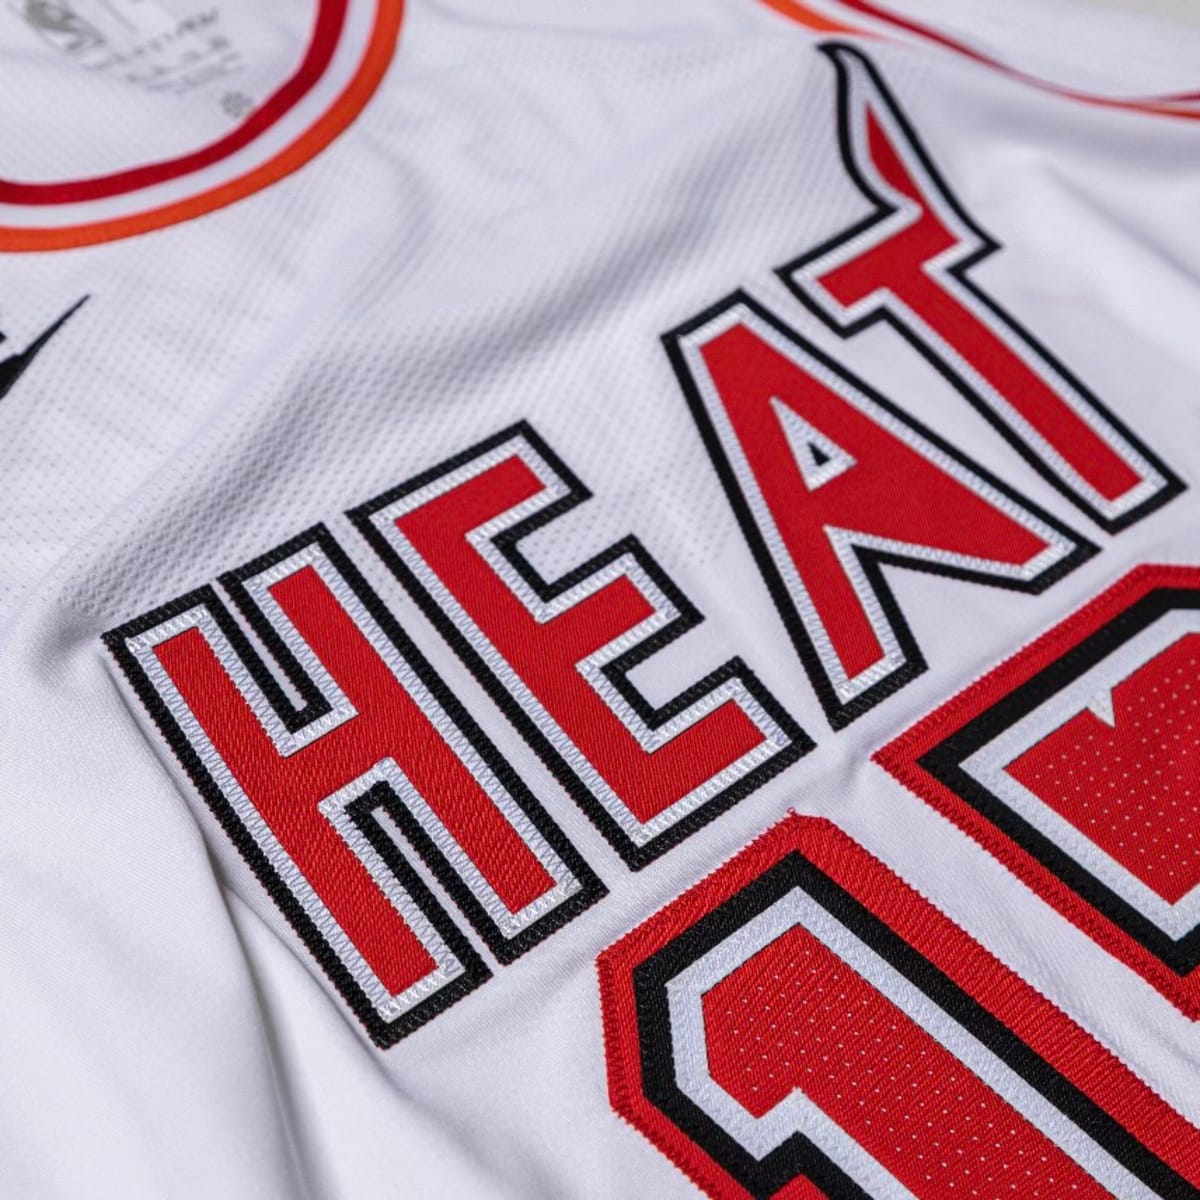 75th Anniversary Miami Heat ADO#13 White NBA Jersey - Kitsociety